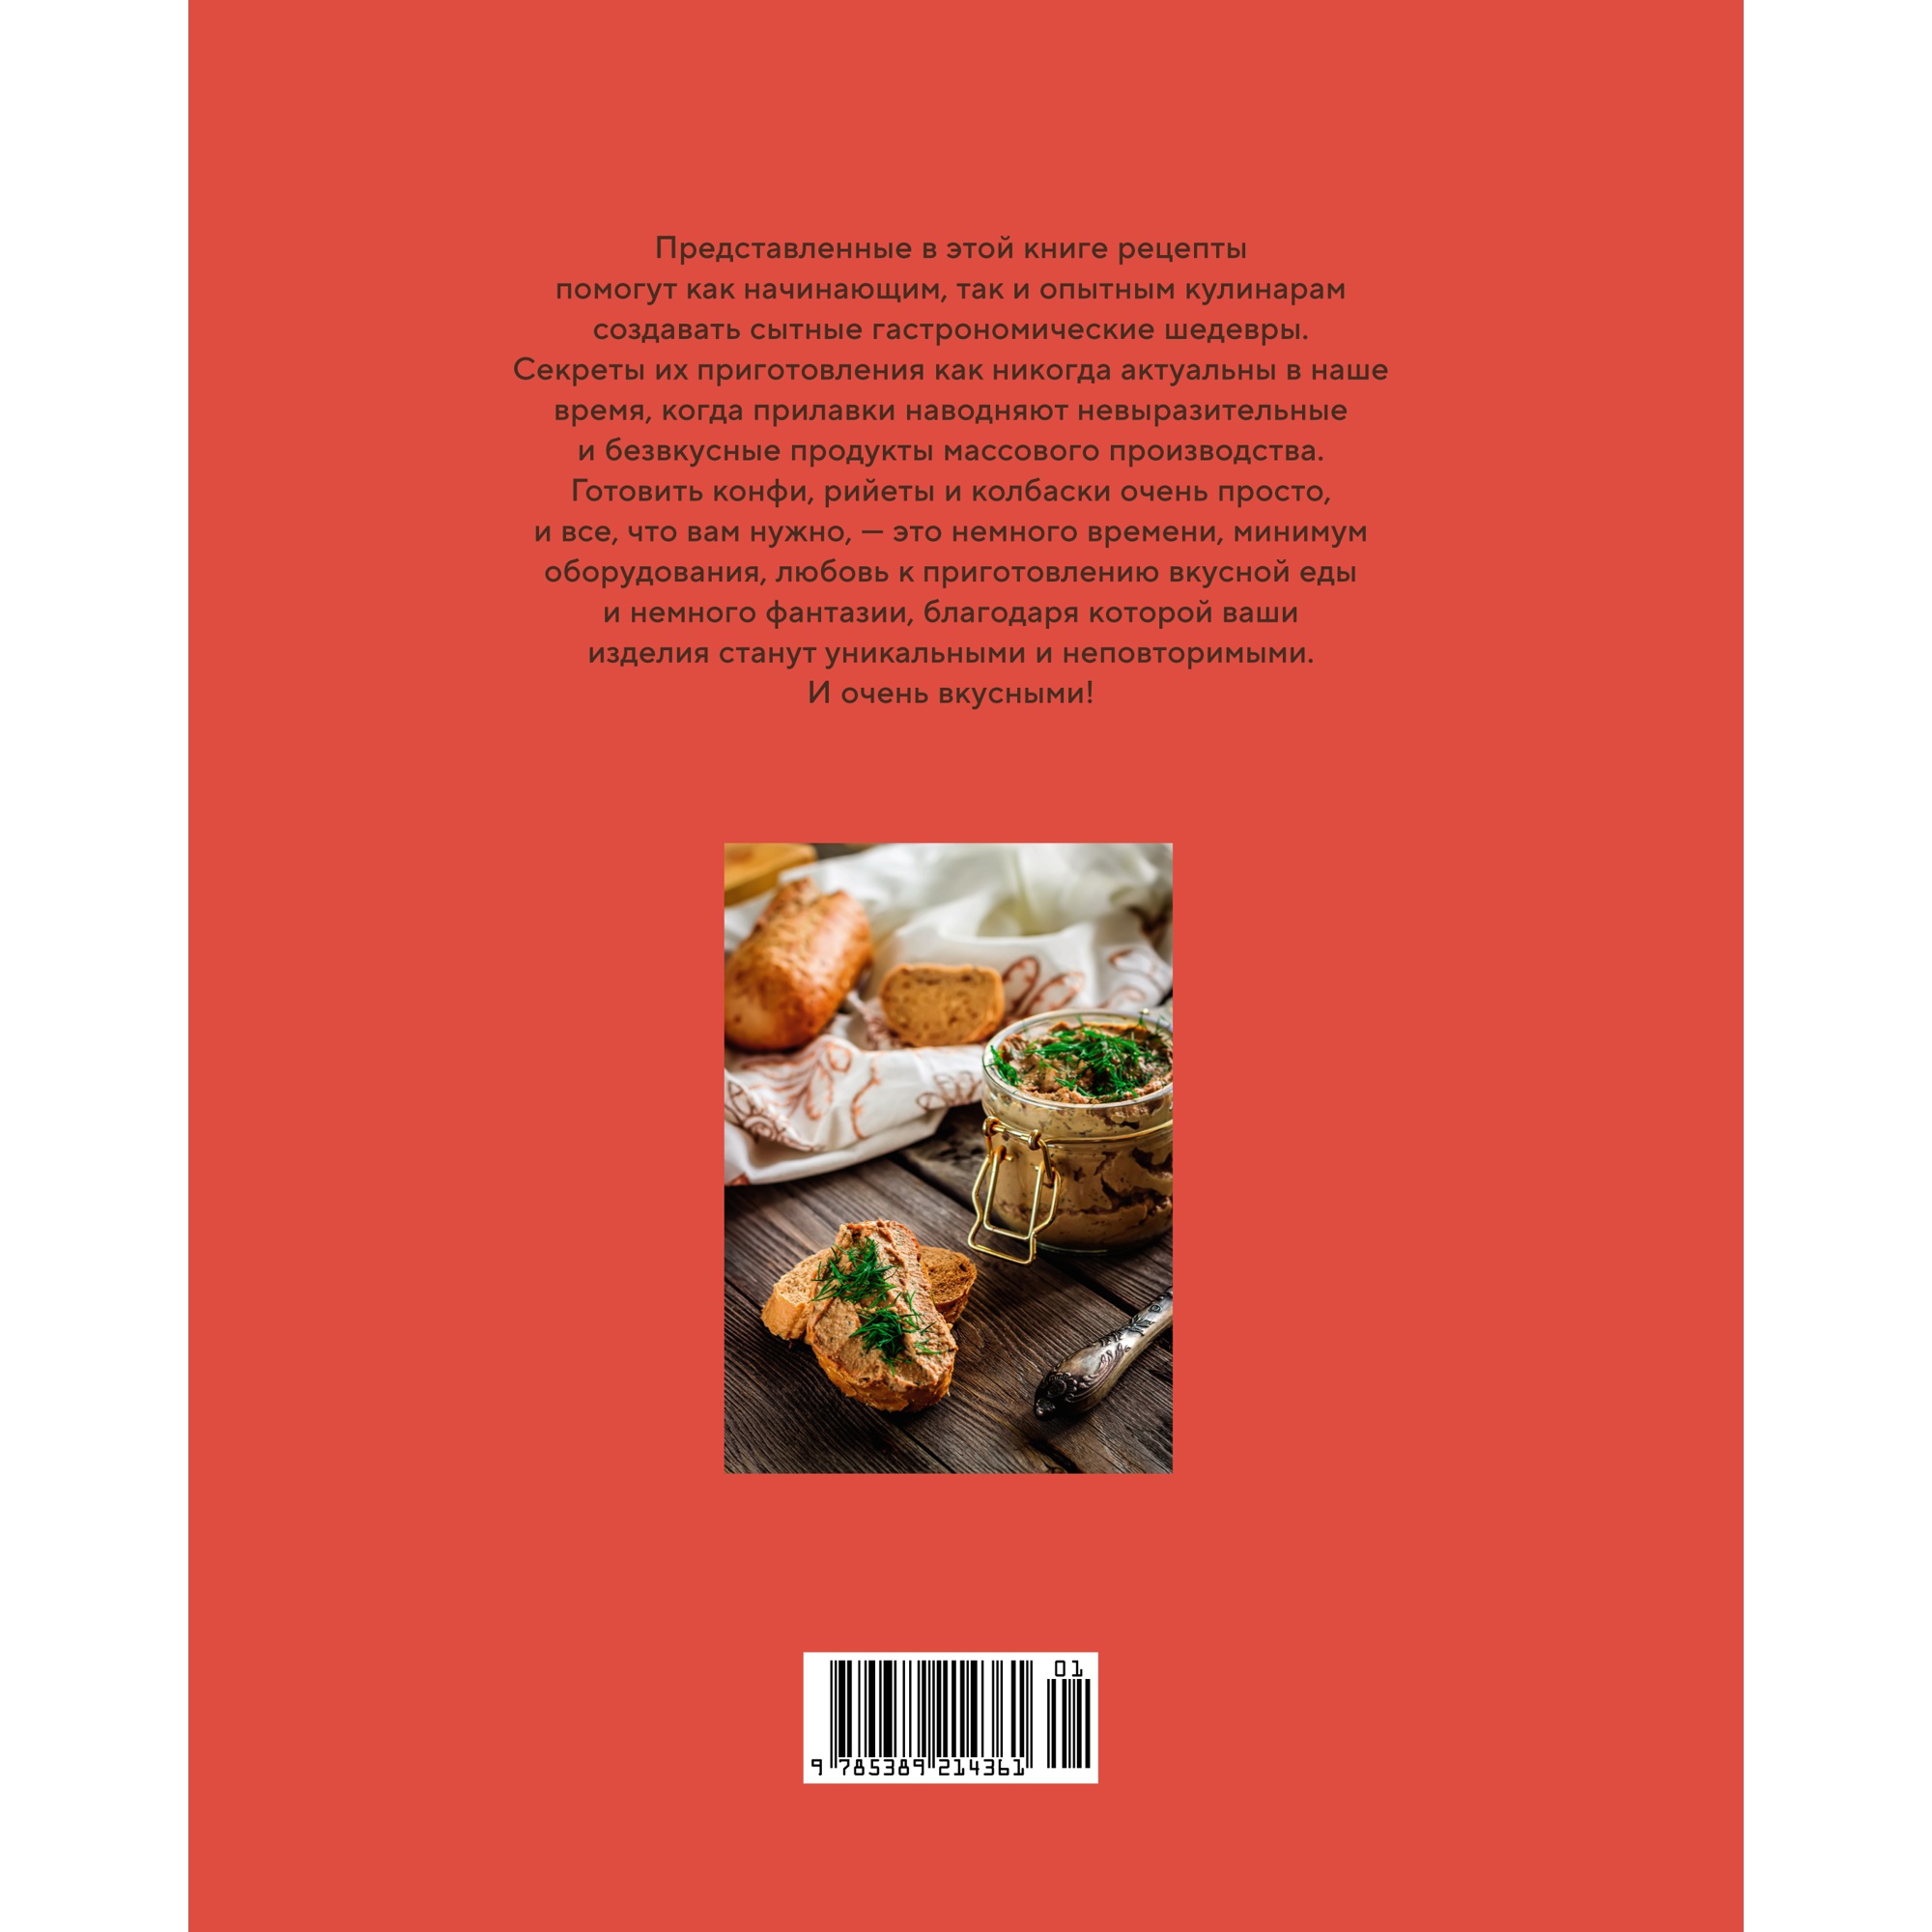 Книга КОЛИБРИ Домашние мясные деликатесы: закуски паштеты колбаски ветчина - фото 24